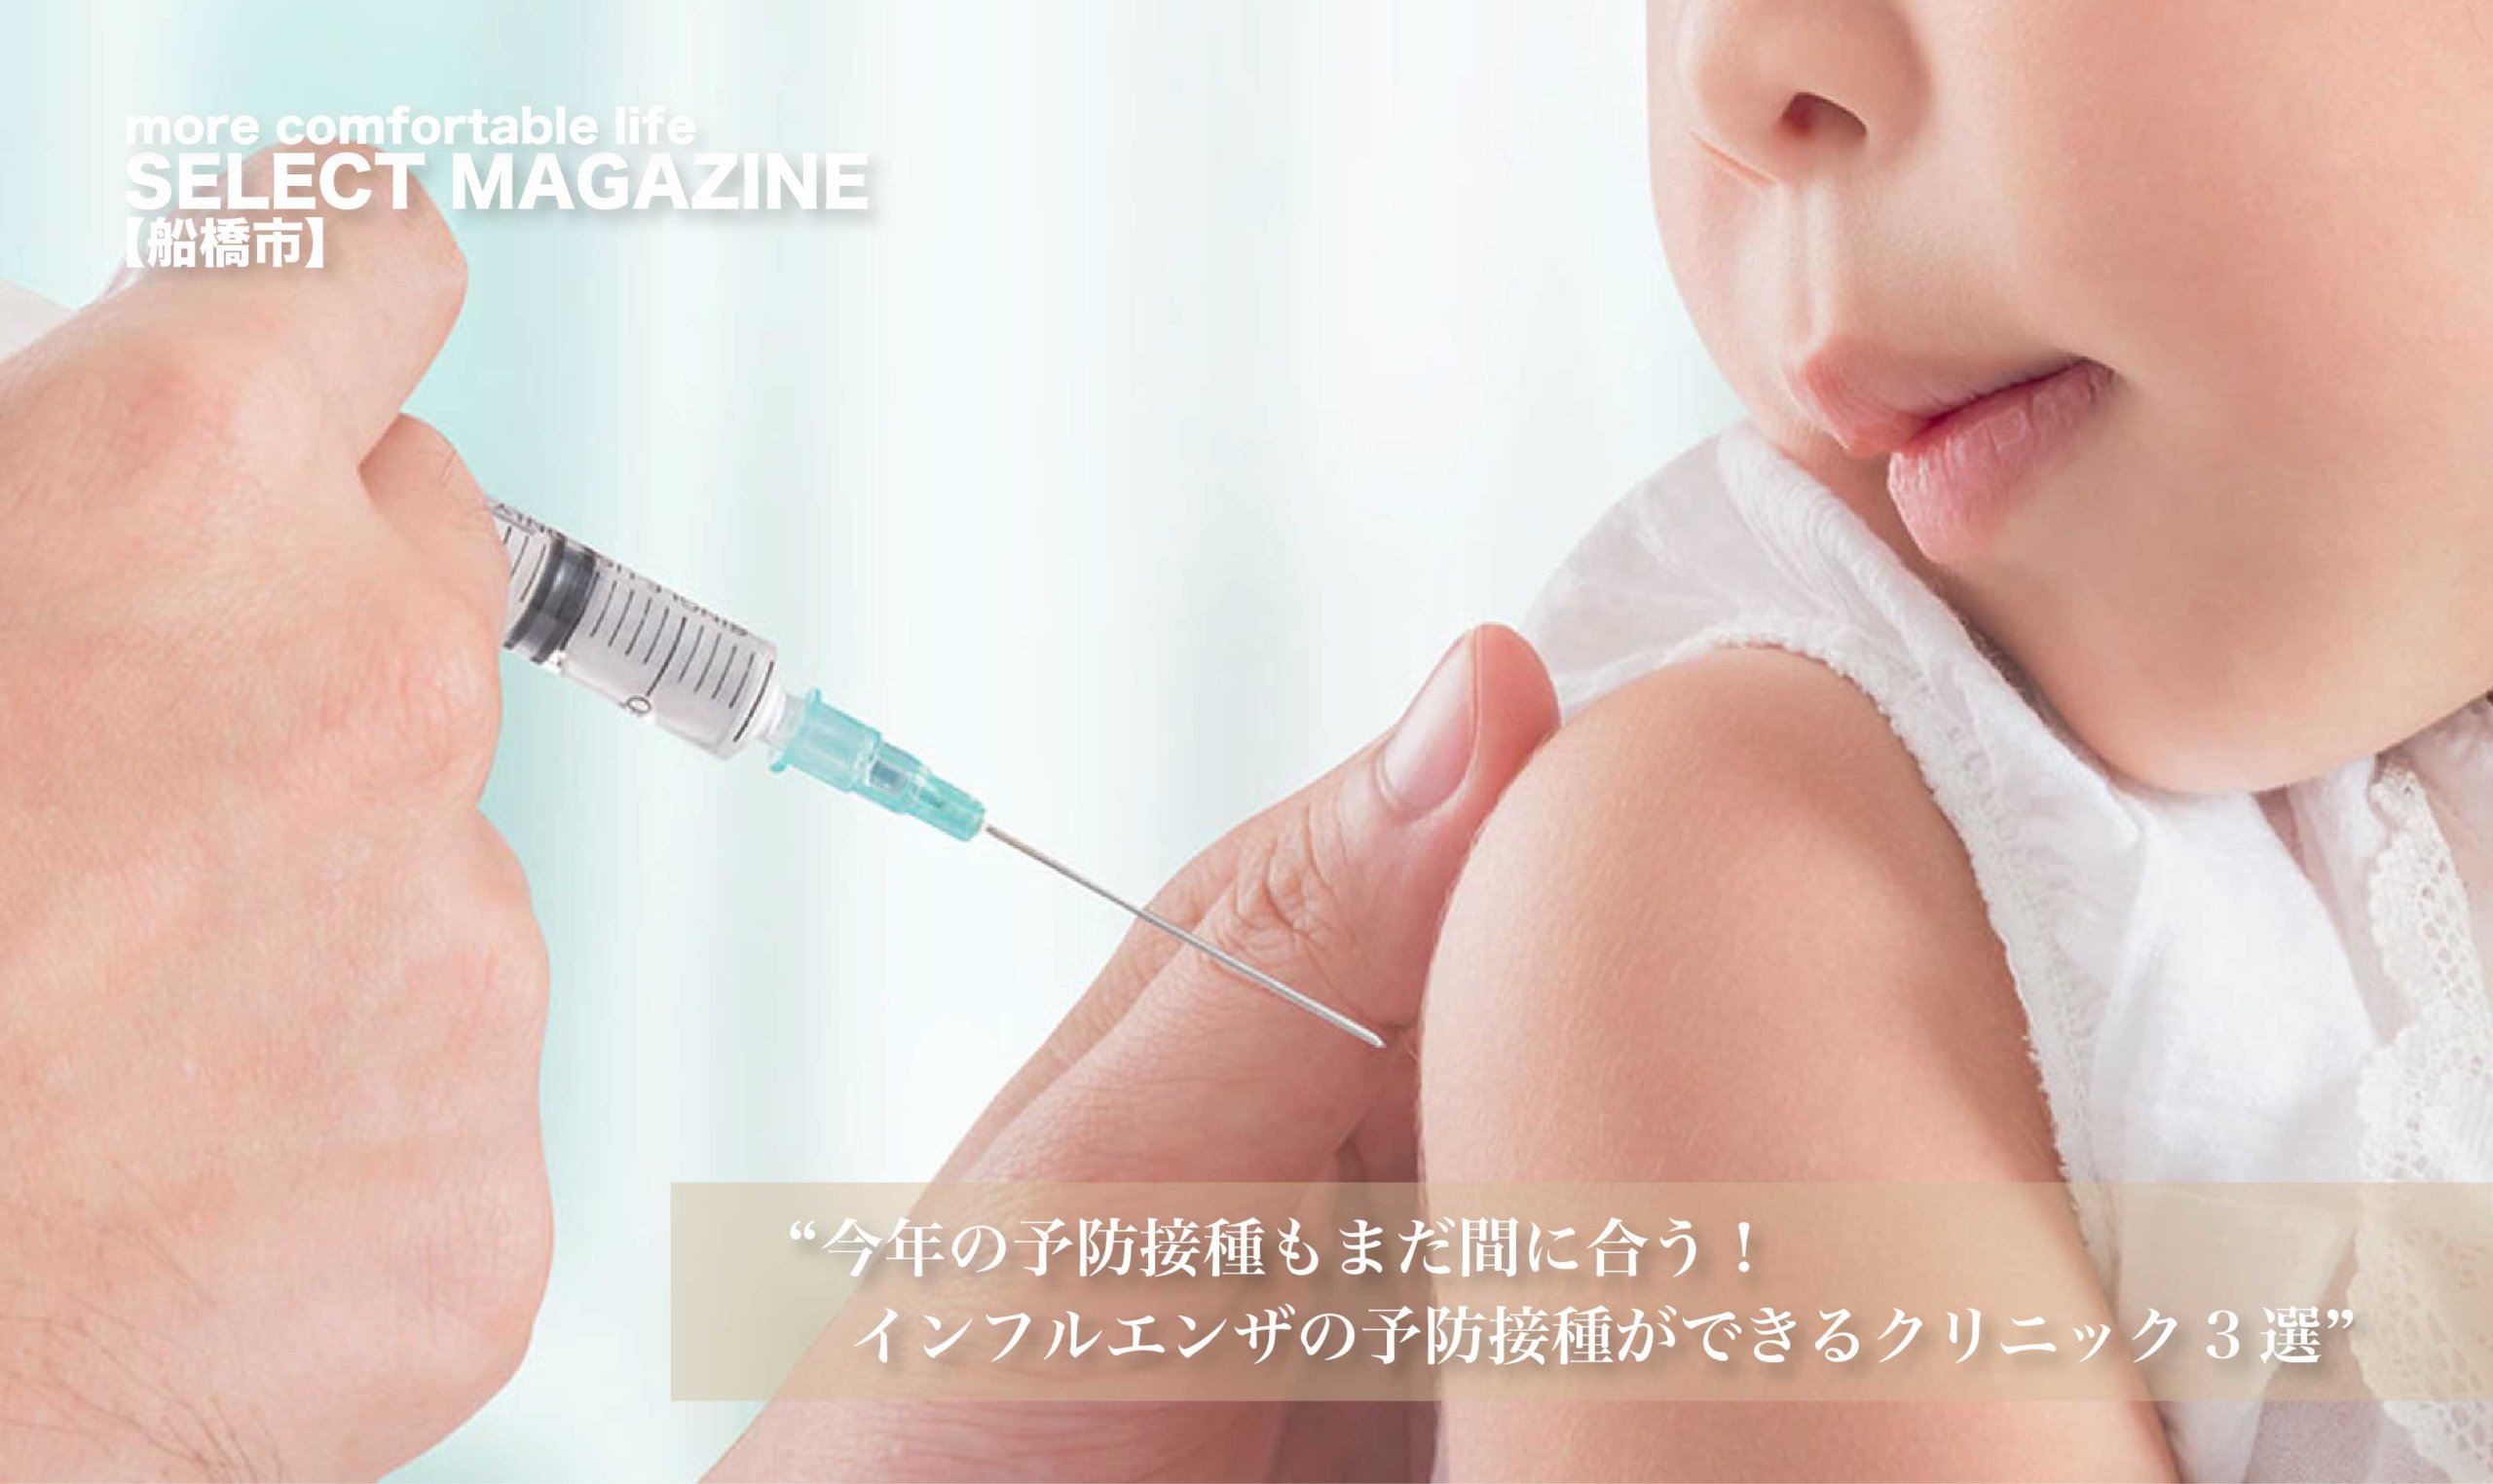 インフルエンザ予防接種を行っているクリニック厳選3選|船橋市